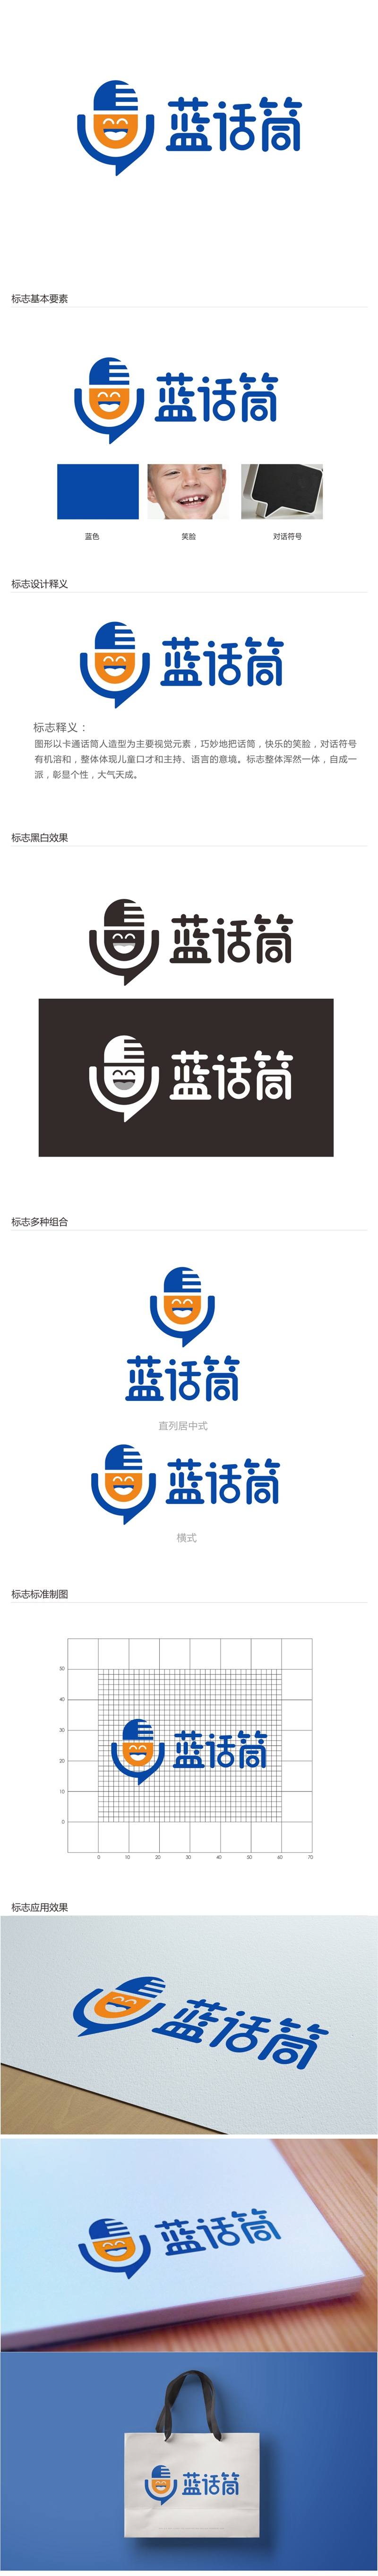 唐国强的蓝话筒【重新整理设计需求】logo设计